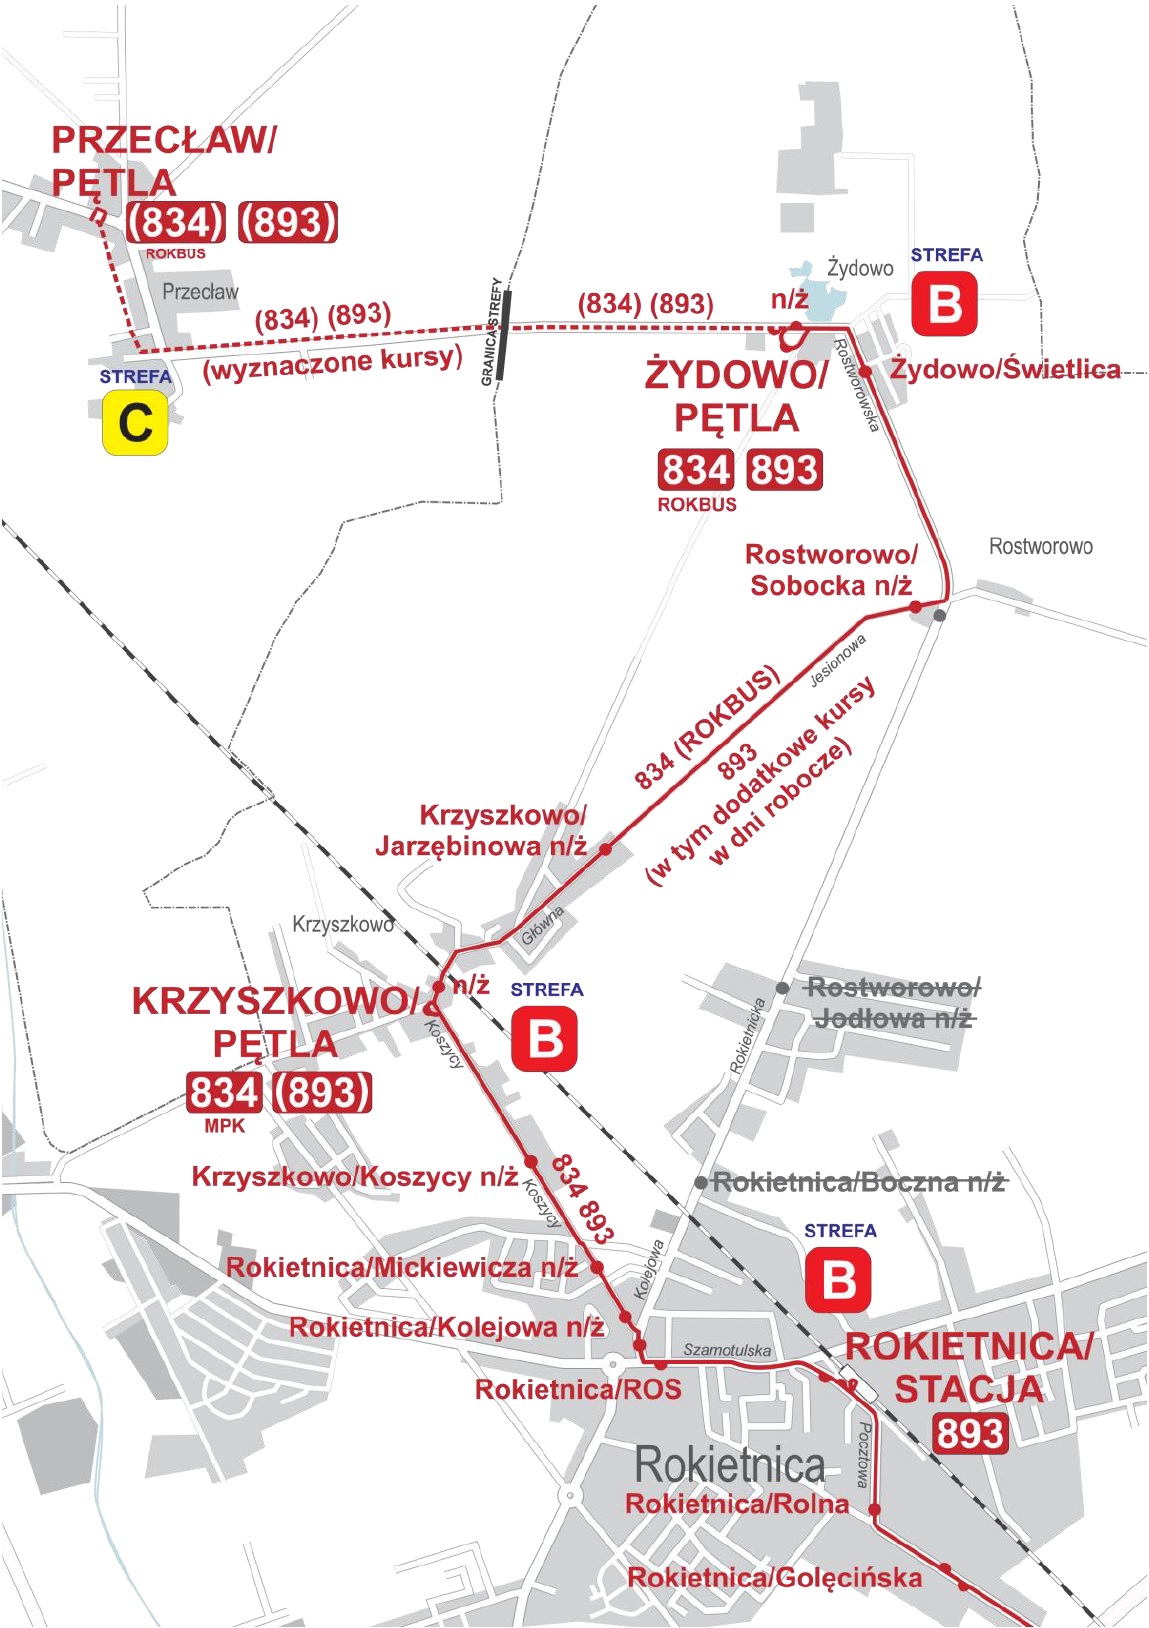 Schemat przedstawia zmienione trasy linii nr 834 i 893 w związku z zamknięciem przejazdu kolejowego na ul. Kolejowej w Rokietnicy.